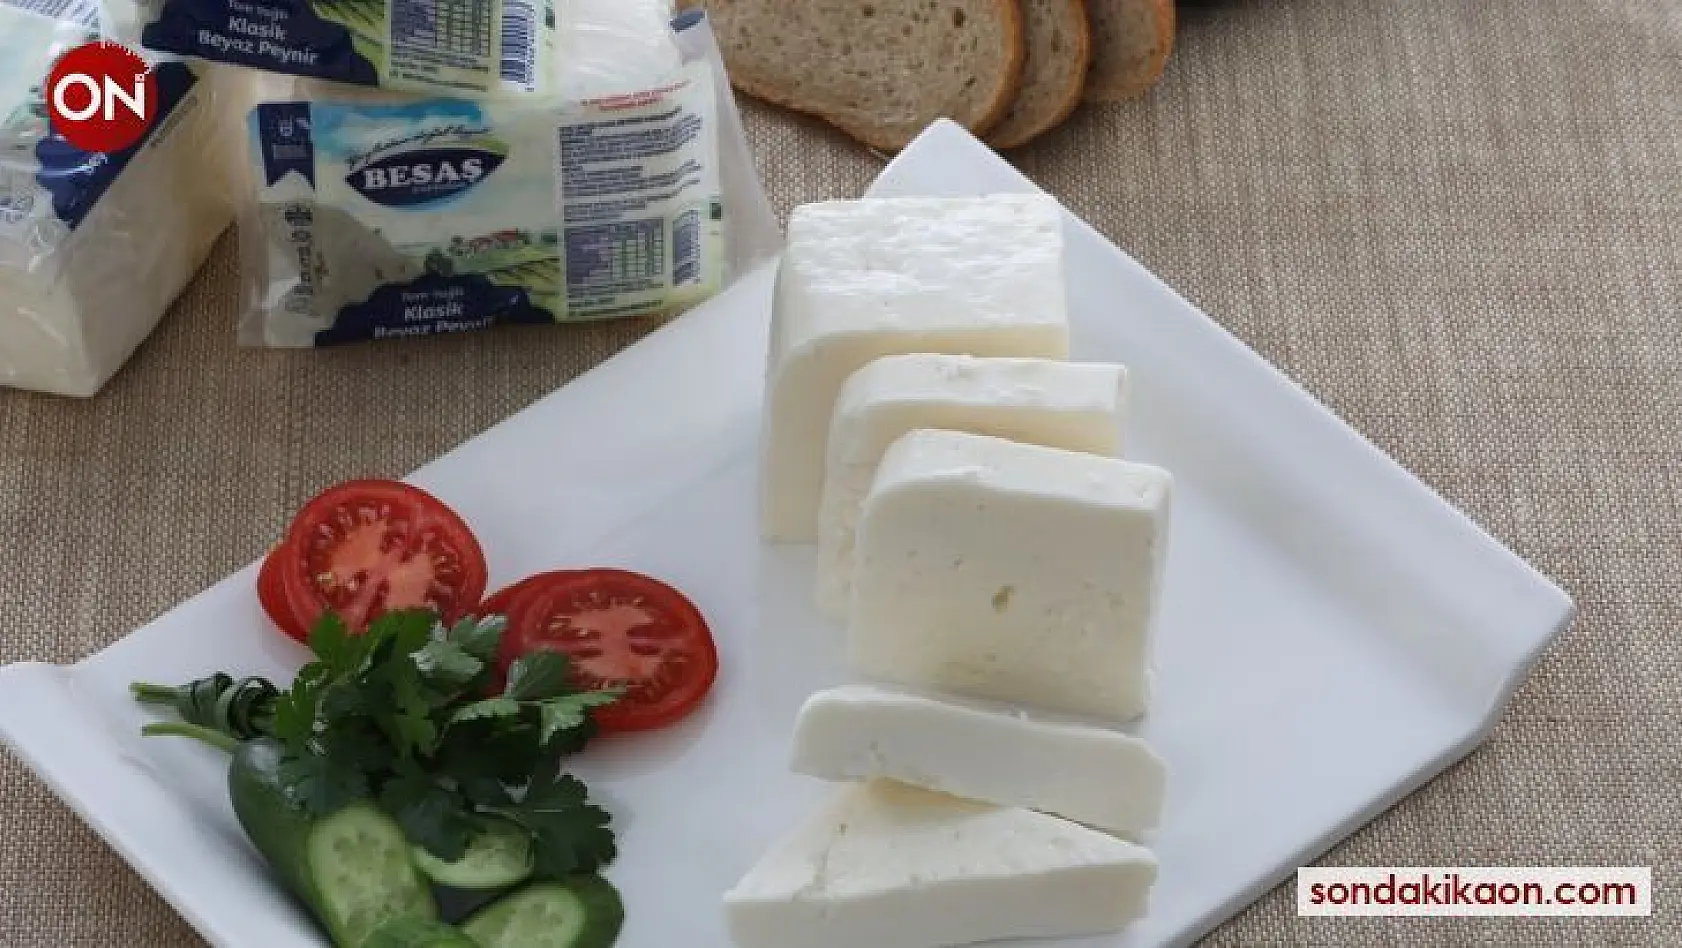 BESAŞ'ın klasik beyaz peynirine tam not